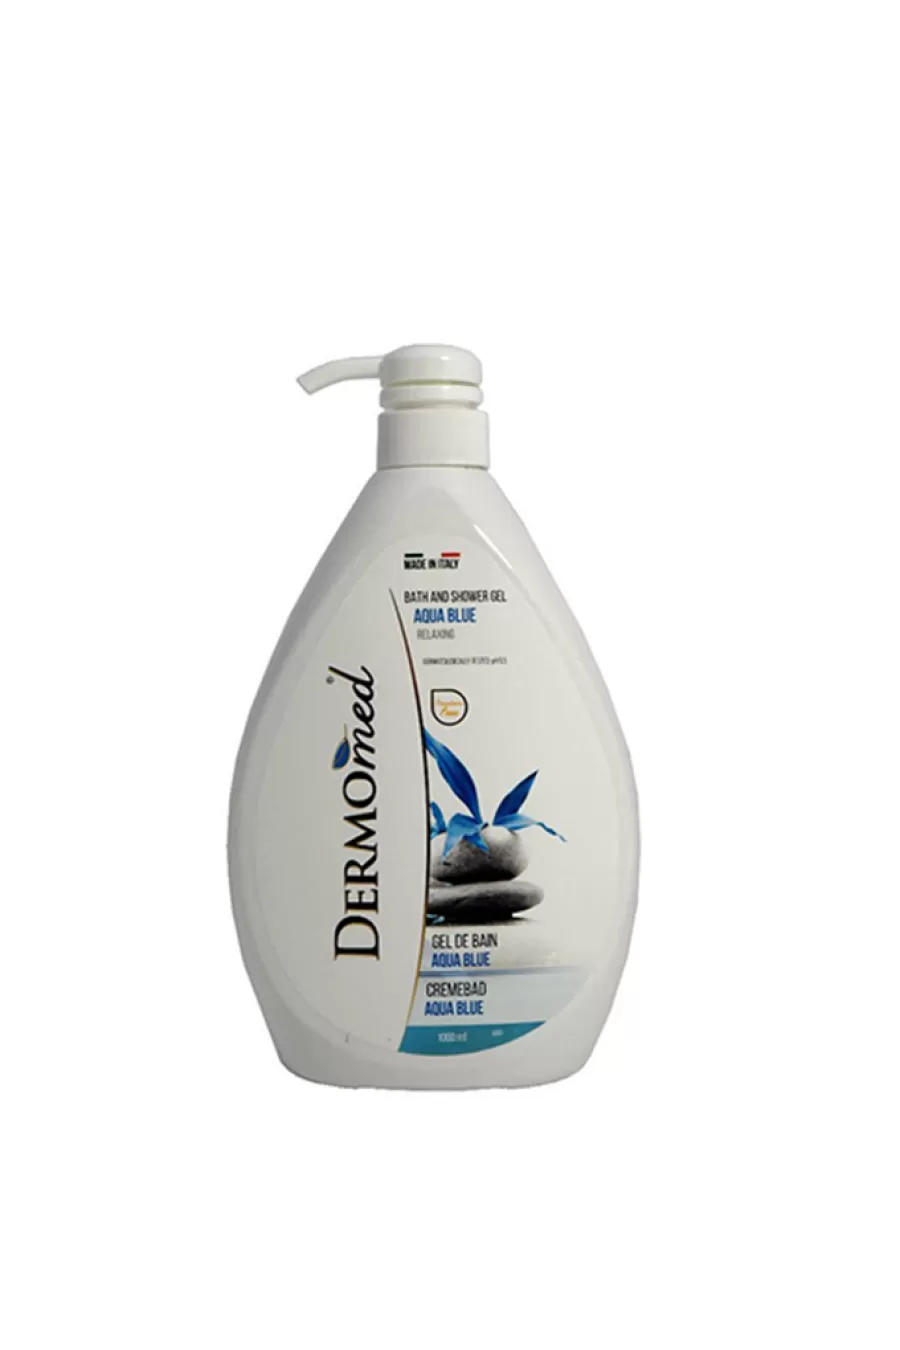 حاوی عصاره دریایی با خاصیت خنک کنندگی  بوی بسیار مطبوع با ماندگاری بالا  ph 5.5 مناسب پست های حساس  آبرسان و مغذی  محافظ لایه هیدرولیپیدیک پوست درمومد DERMOmed شامپو بدن درمومد